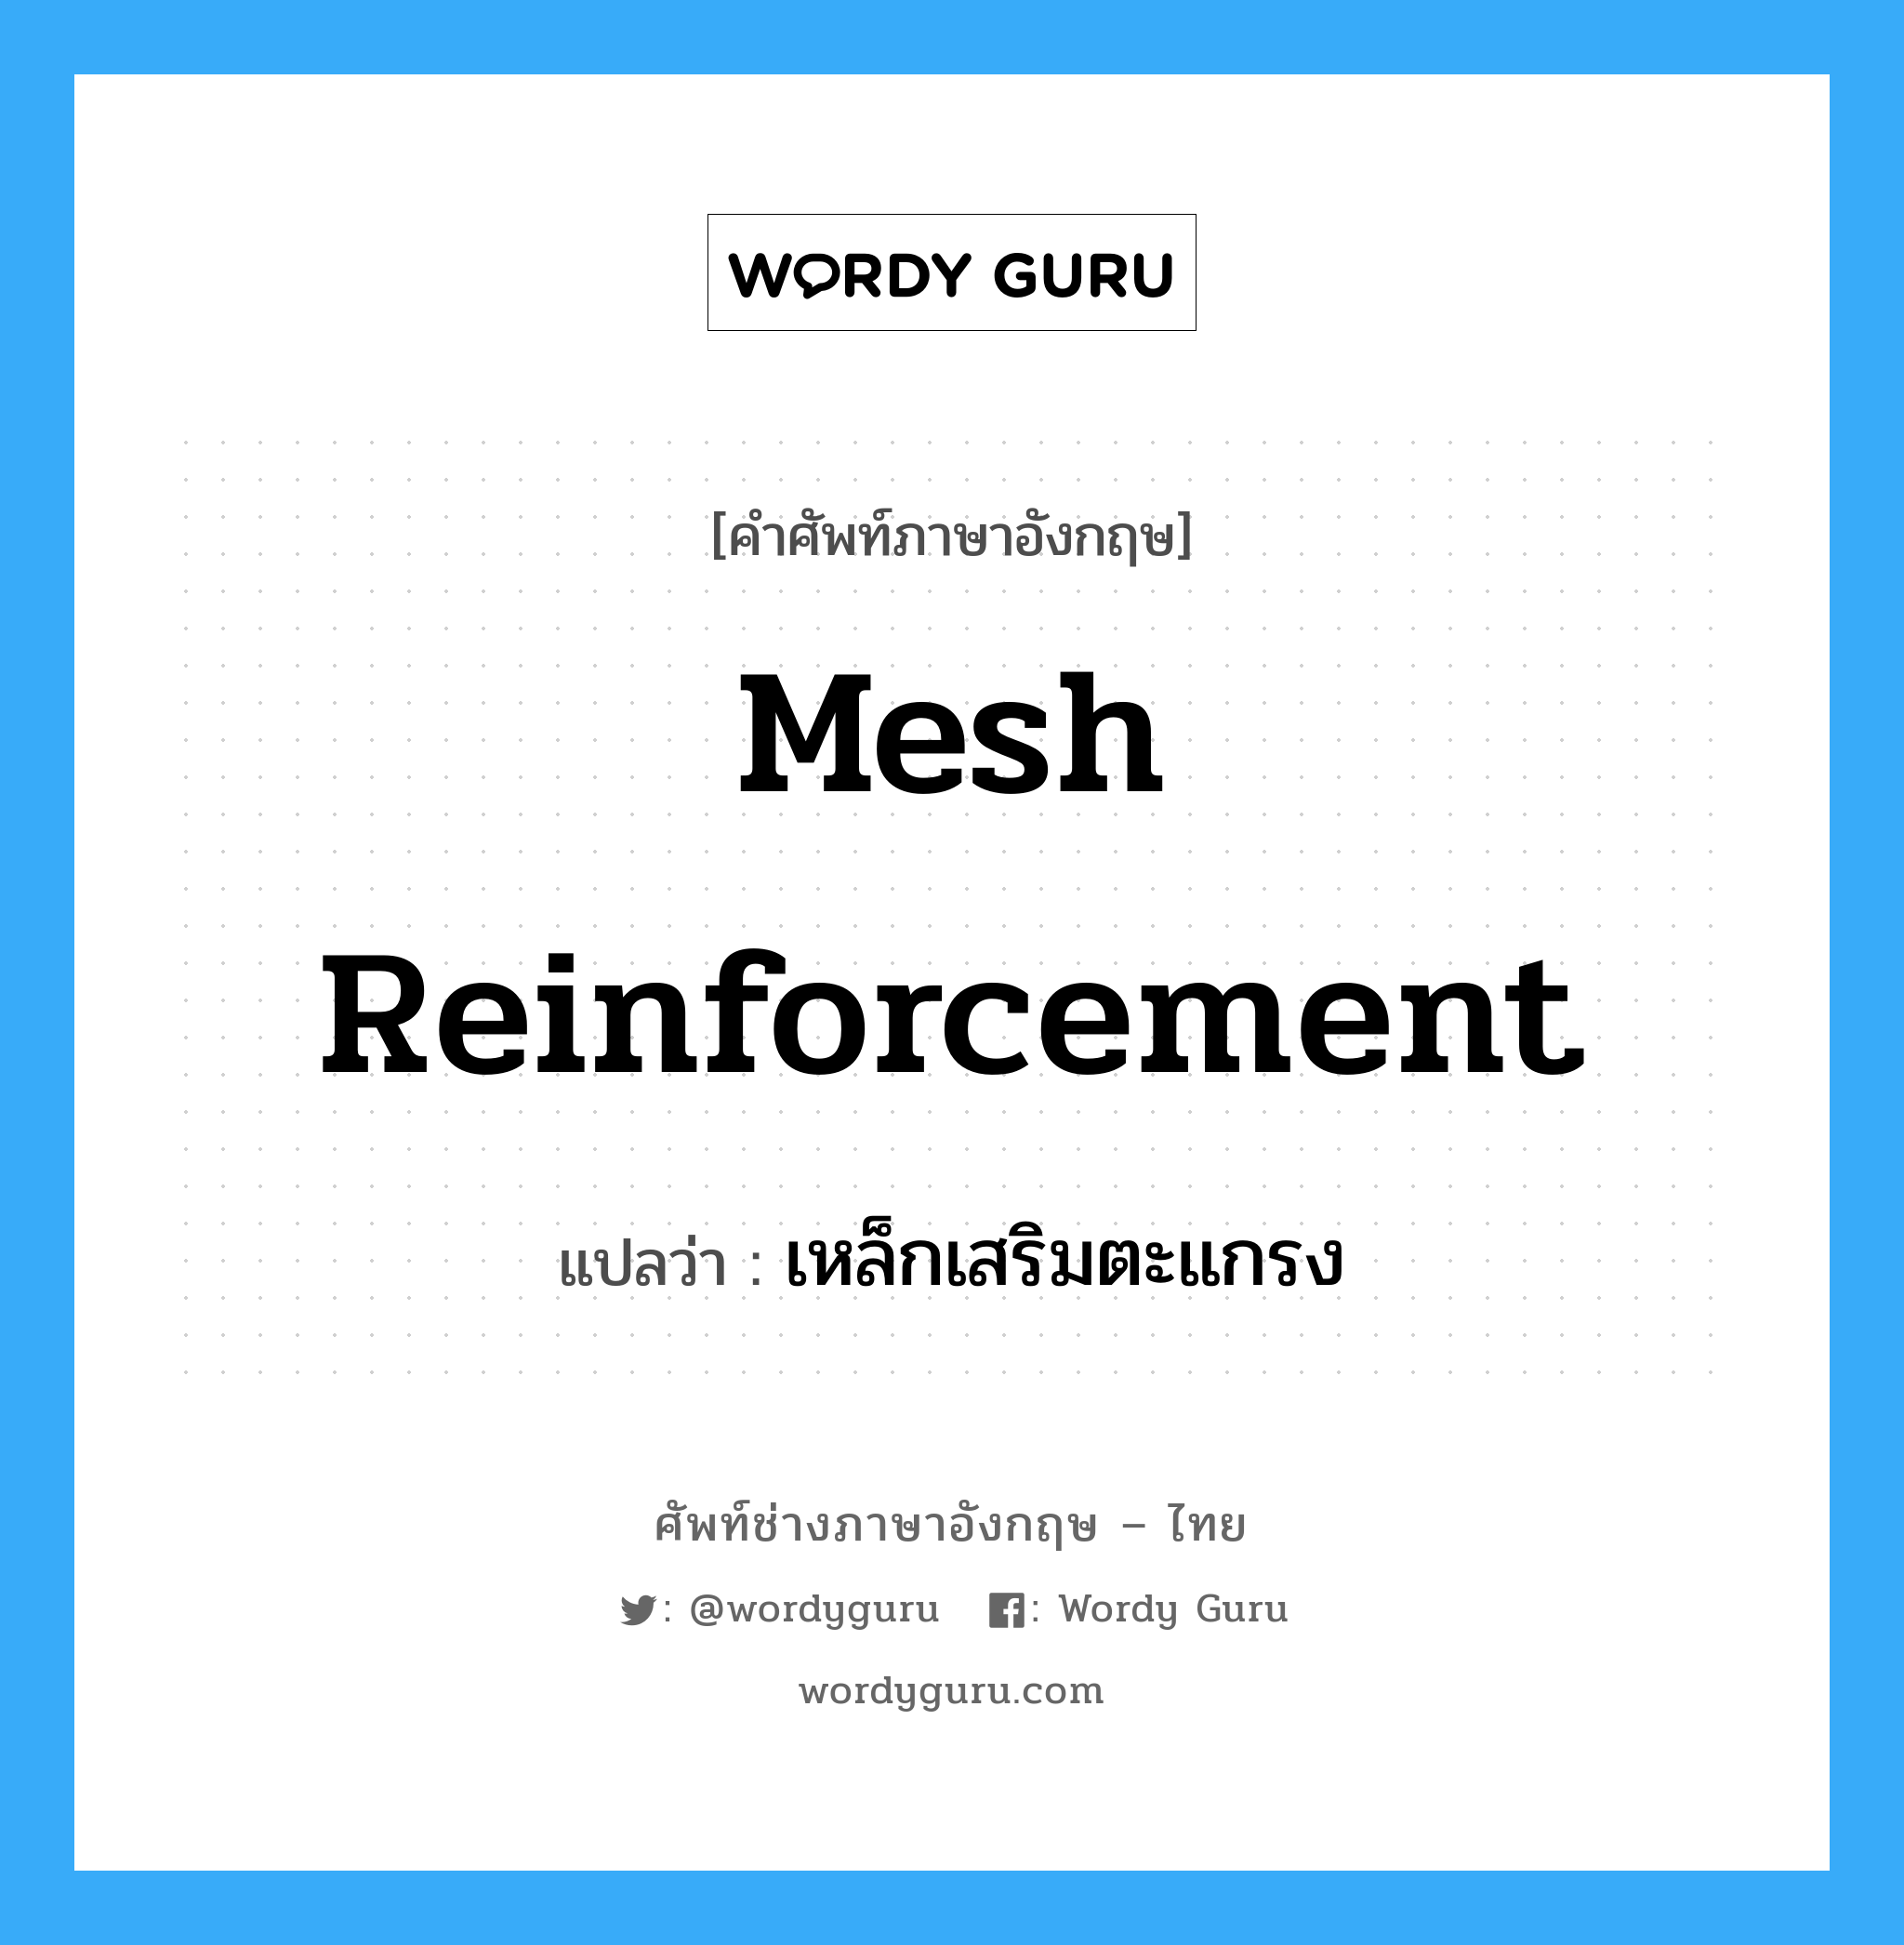 เหล็กเสริมตะแกรง ภาษาอังกฤษ?, คำศัพท์ช่างภาษาอังกฤษ - ไทย เหล็กเสริมตะแกรง คำศัพท์ภาษาอังกฤษ เหล็กเสริมตะแกรง แปลว่า mesh reinforcement